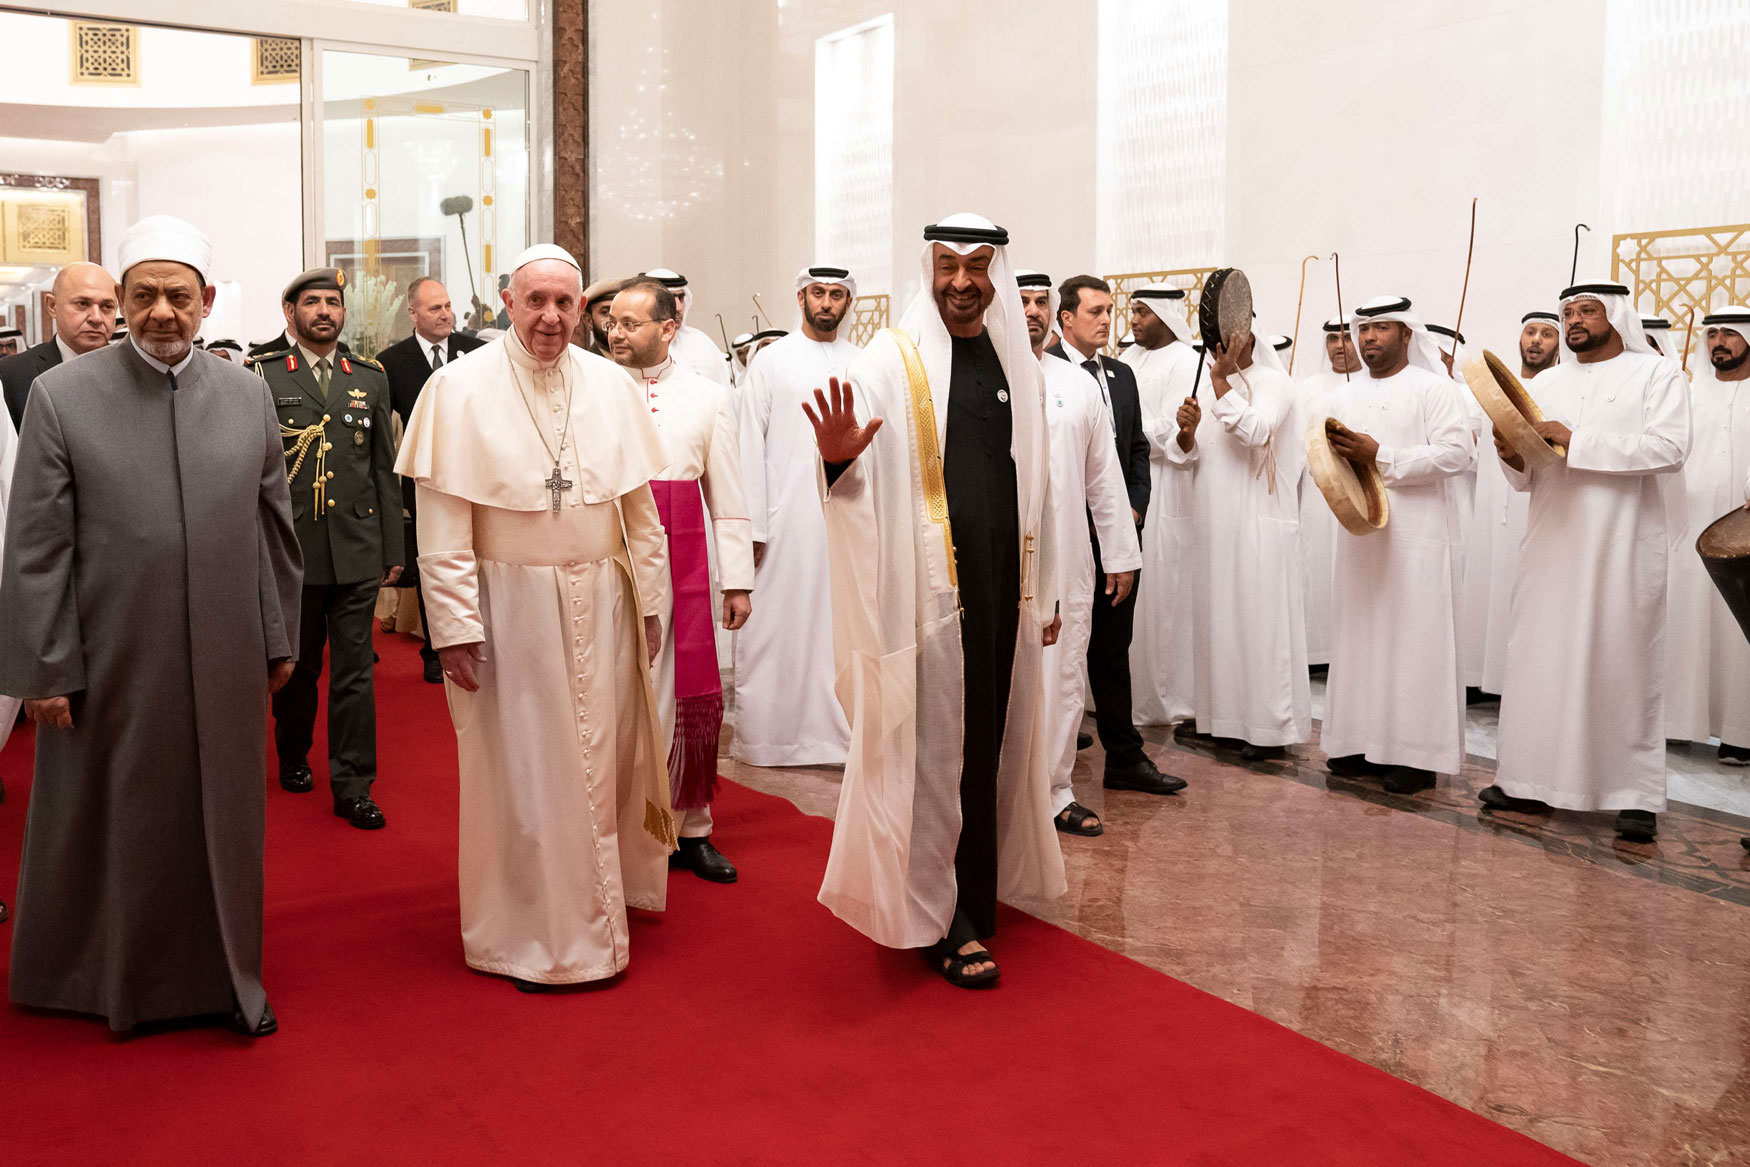  البابا فرنسيس يلتقي الأمير محمد بن زايد آل نهيان بالإمارات